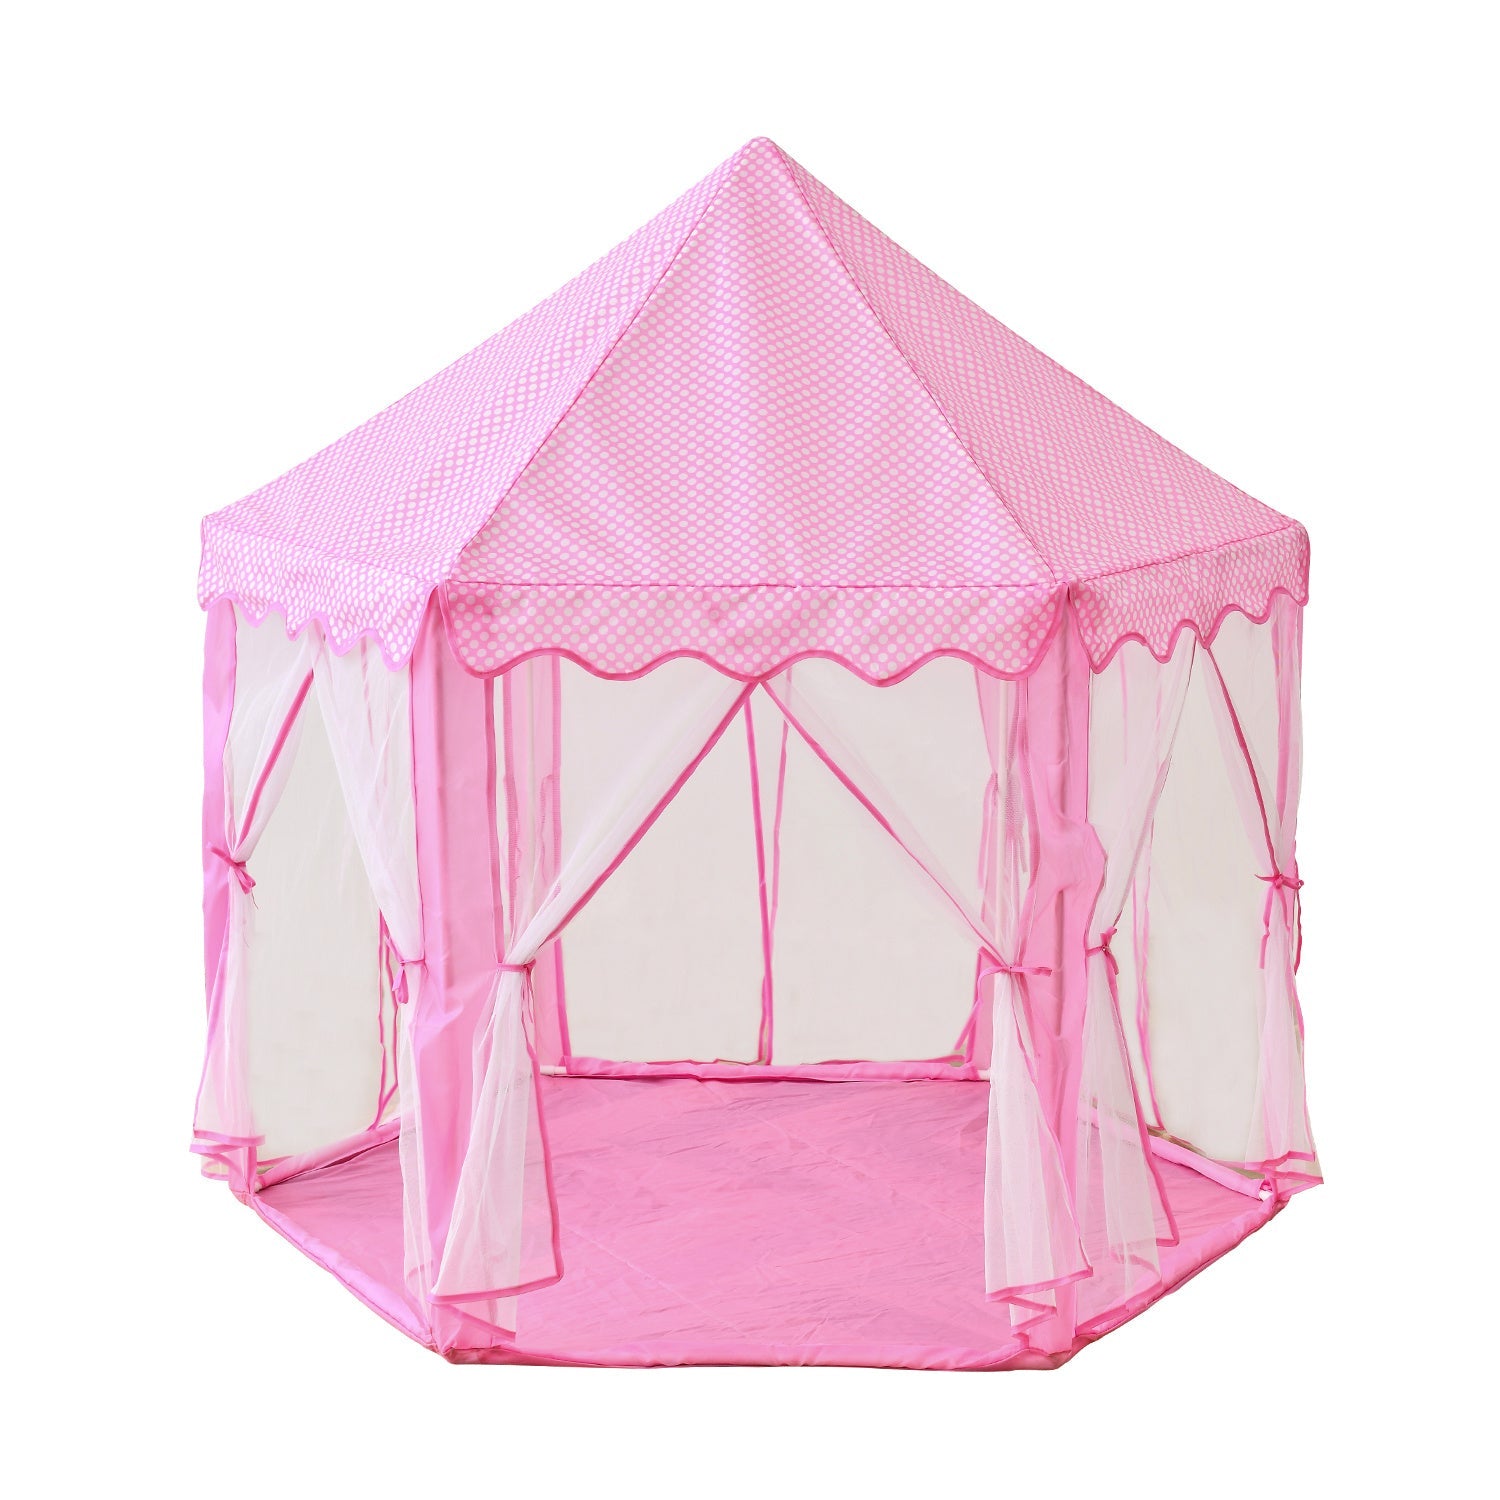 Outdoor Indoor Portable Folding Princess Castle Tent Kids Children